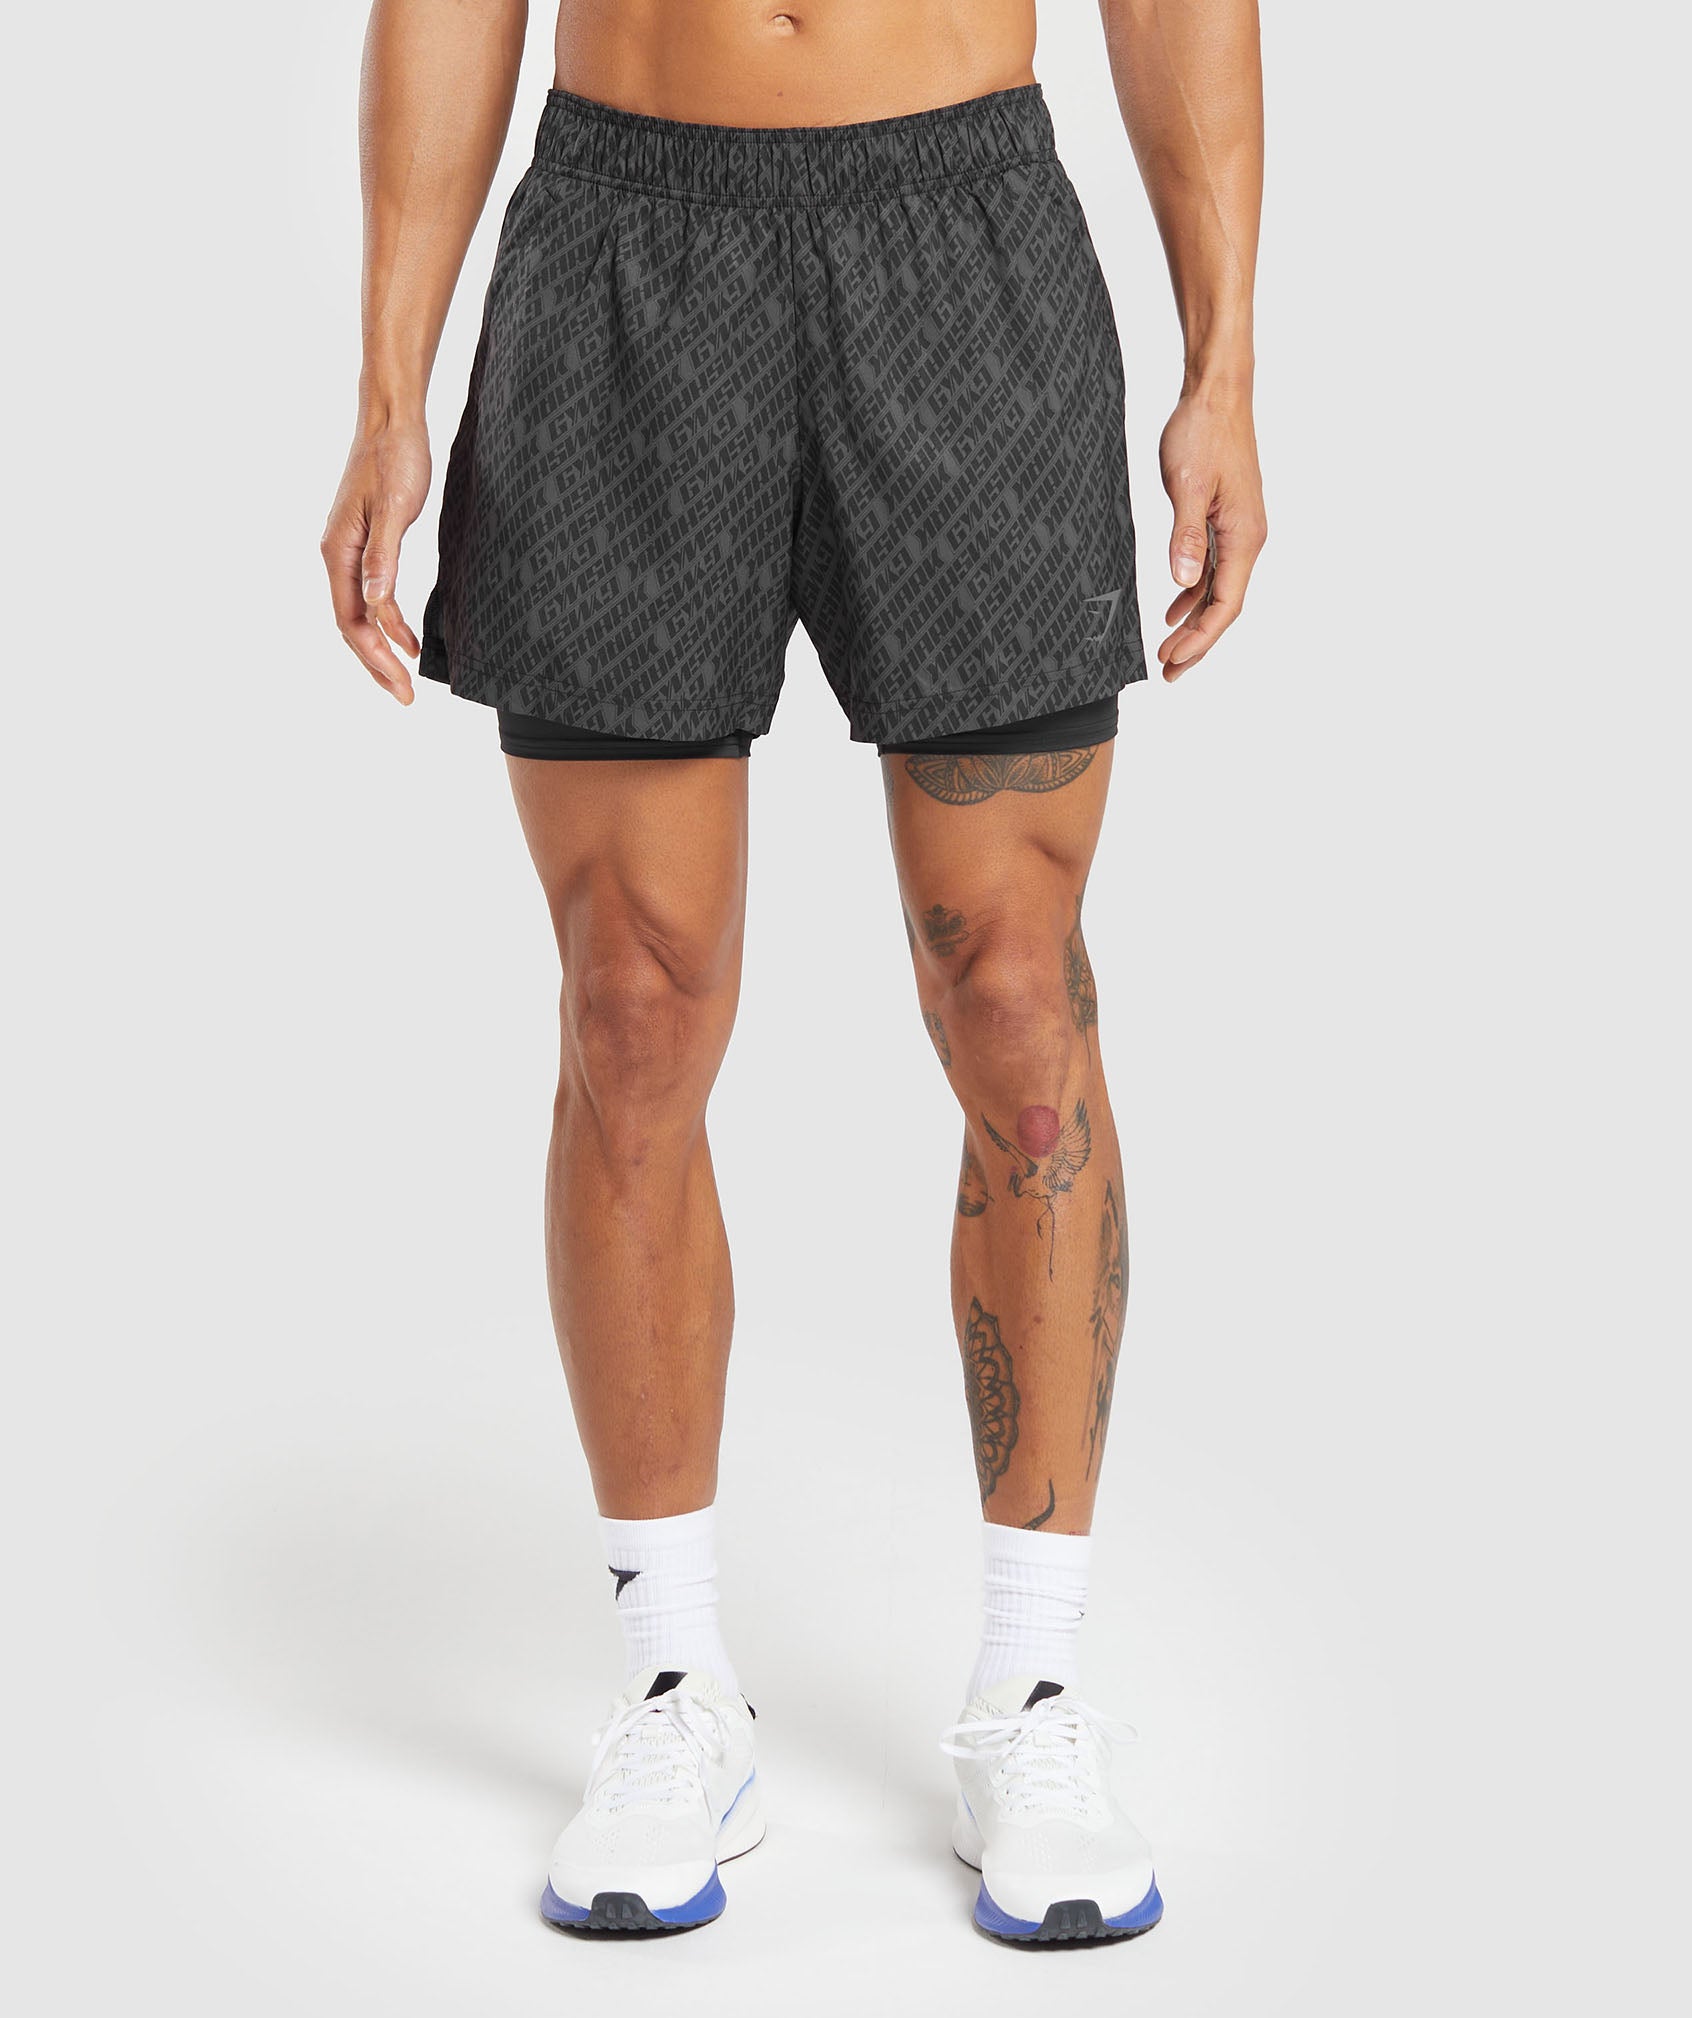 Sport 5" 2 In 1 Shorts in Asphalt Grey/Black